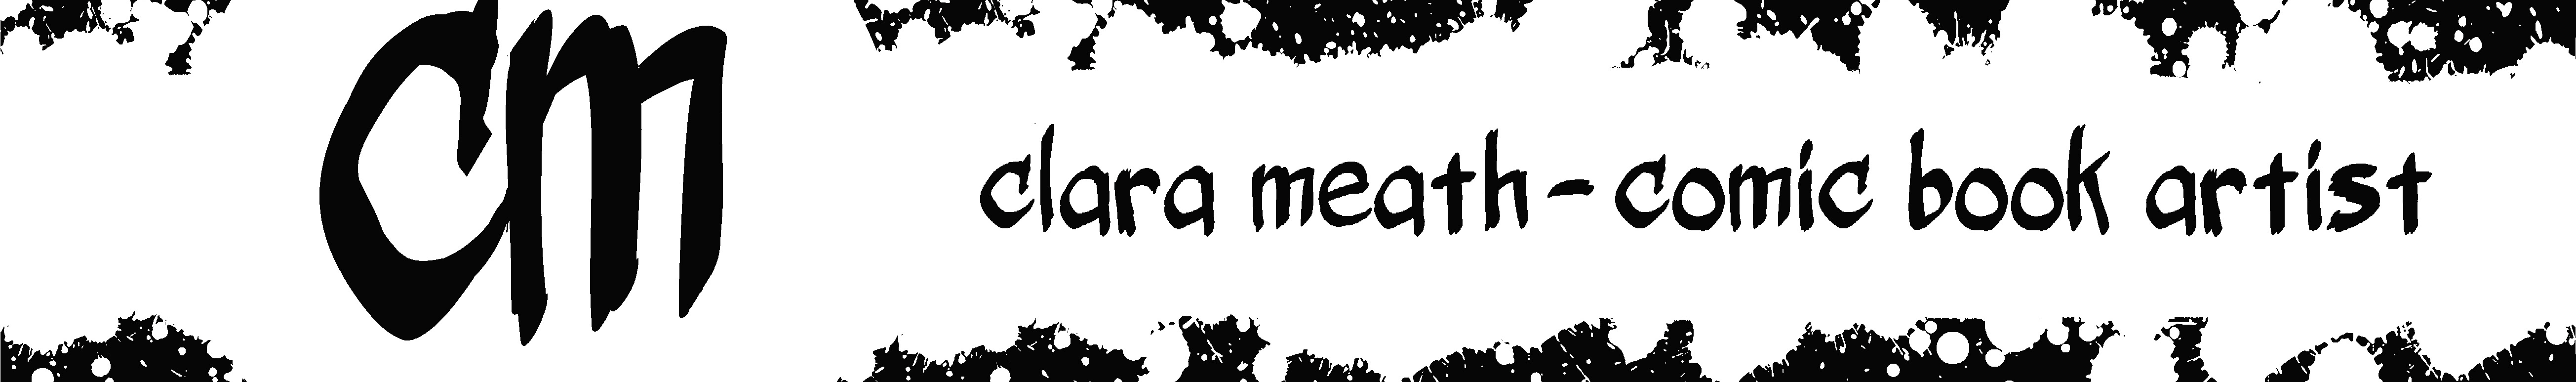 Banner de perfil de Clara Meath